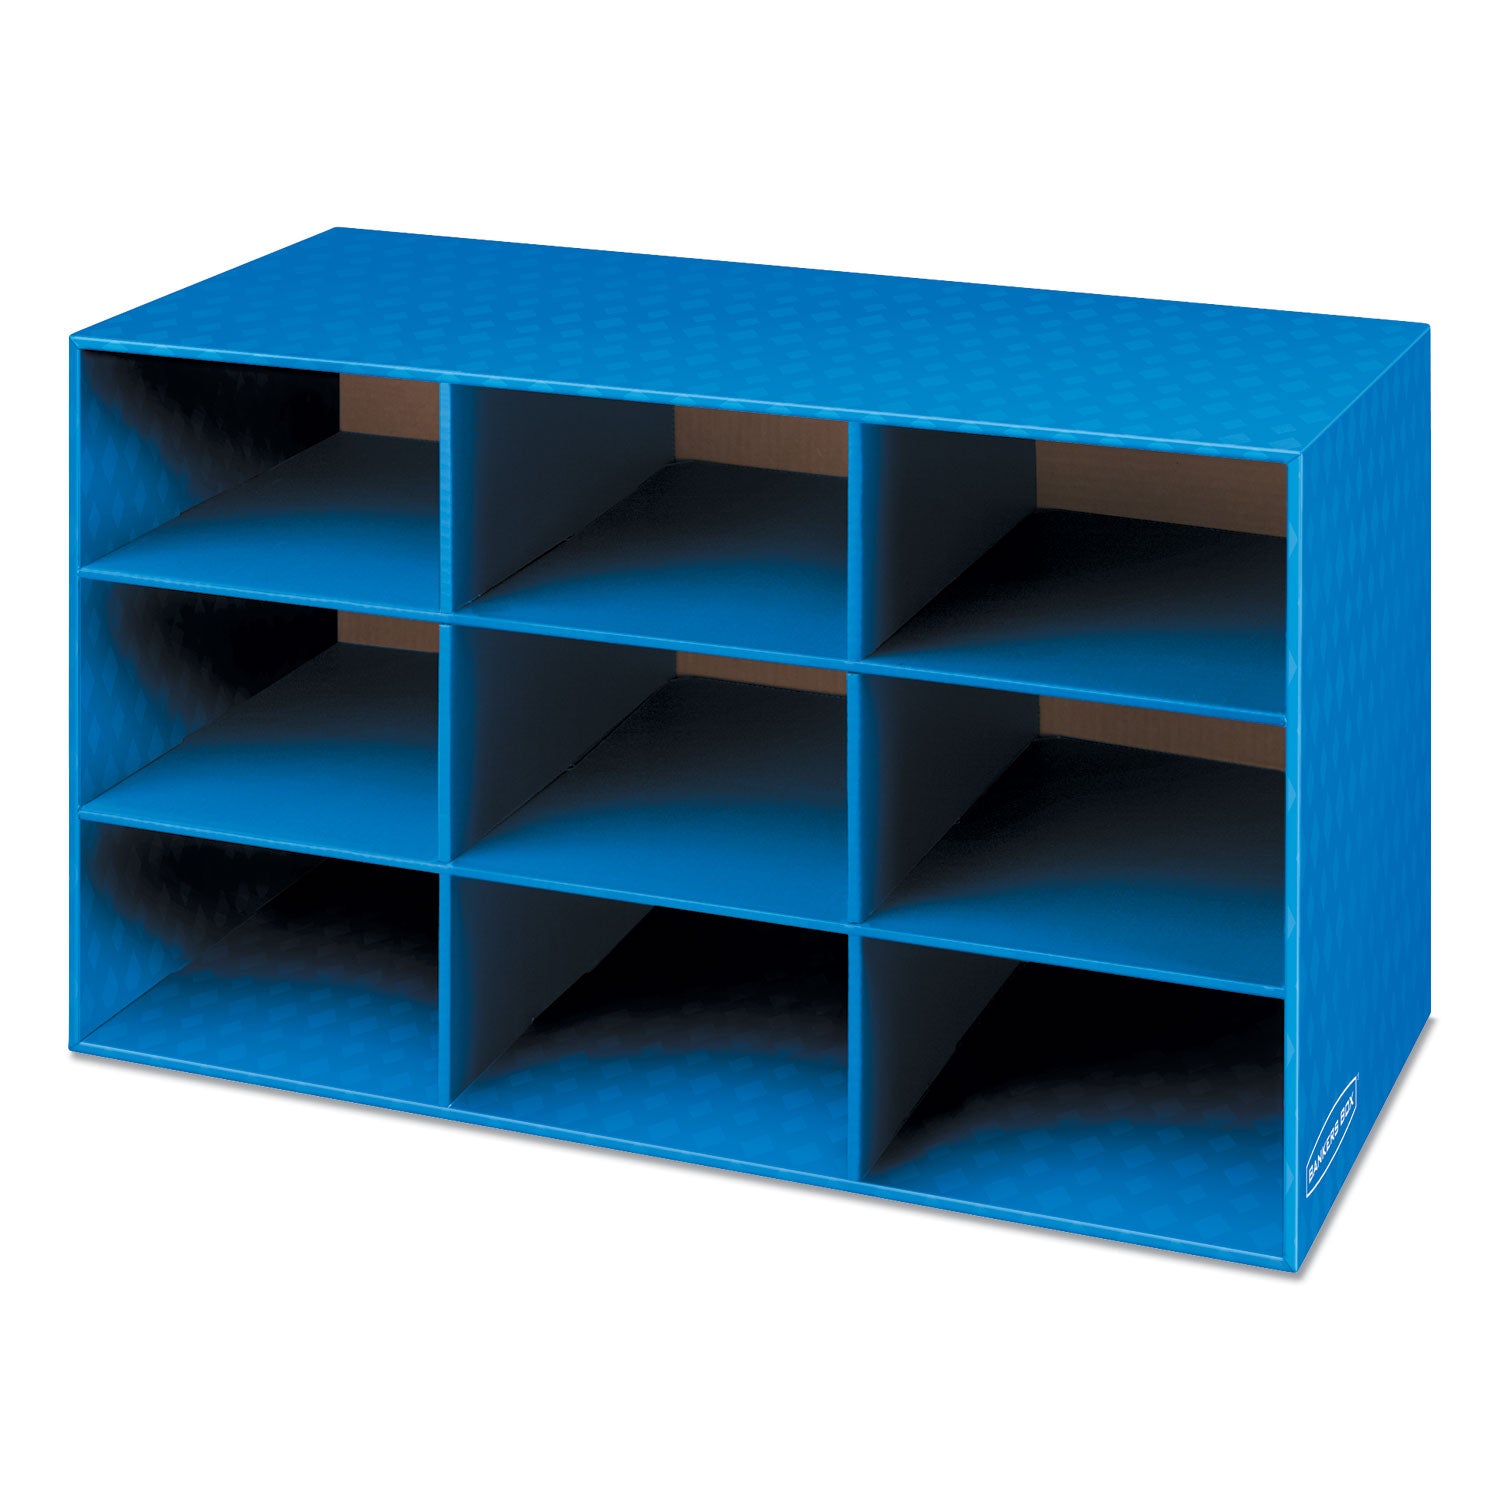 Classroom Literature Sorter, 9 Compartments, 28.25 x 13 x 16, Blue - 